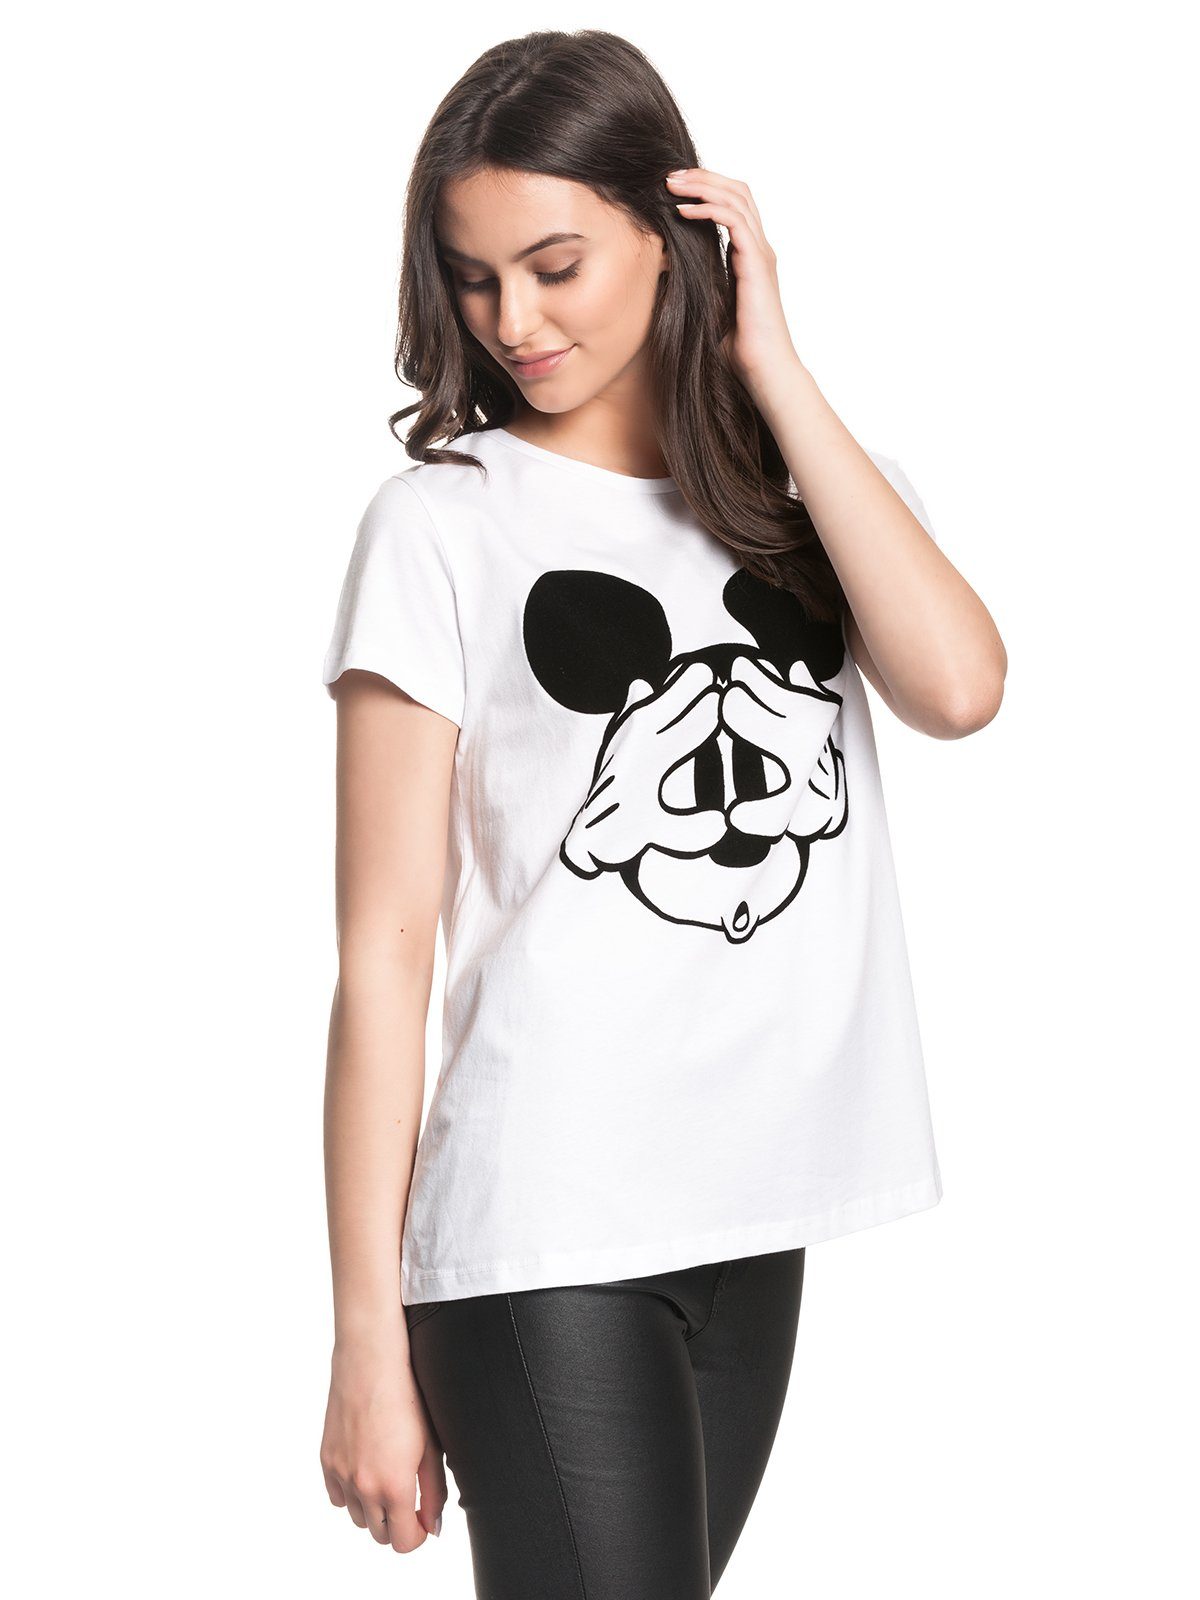 Mouse Mickey T-Shirt Disney Mickey Hey Disney